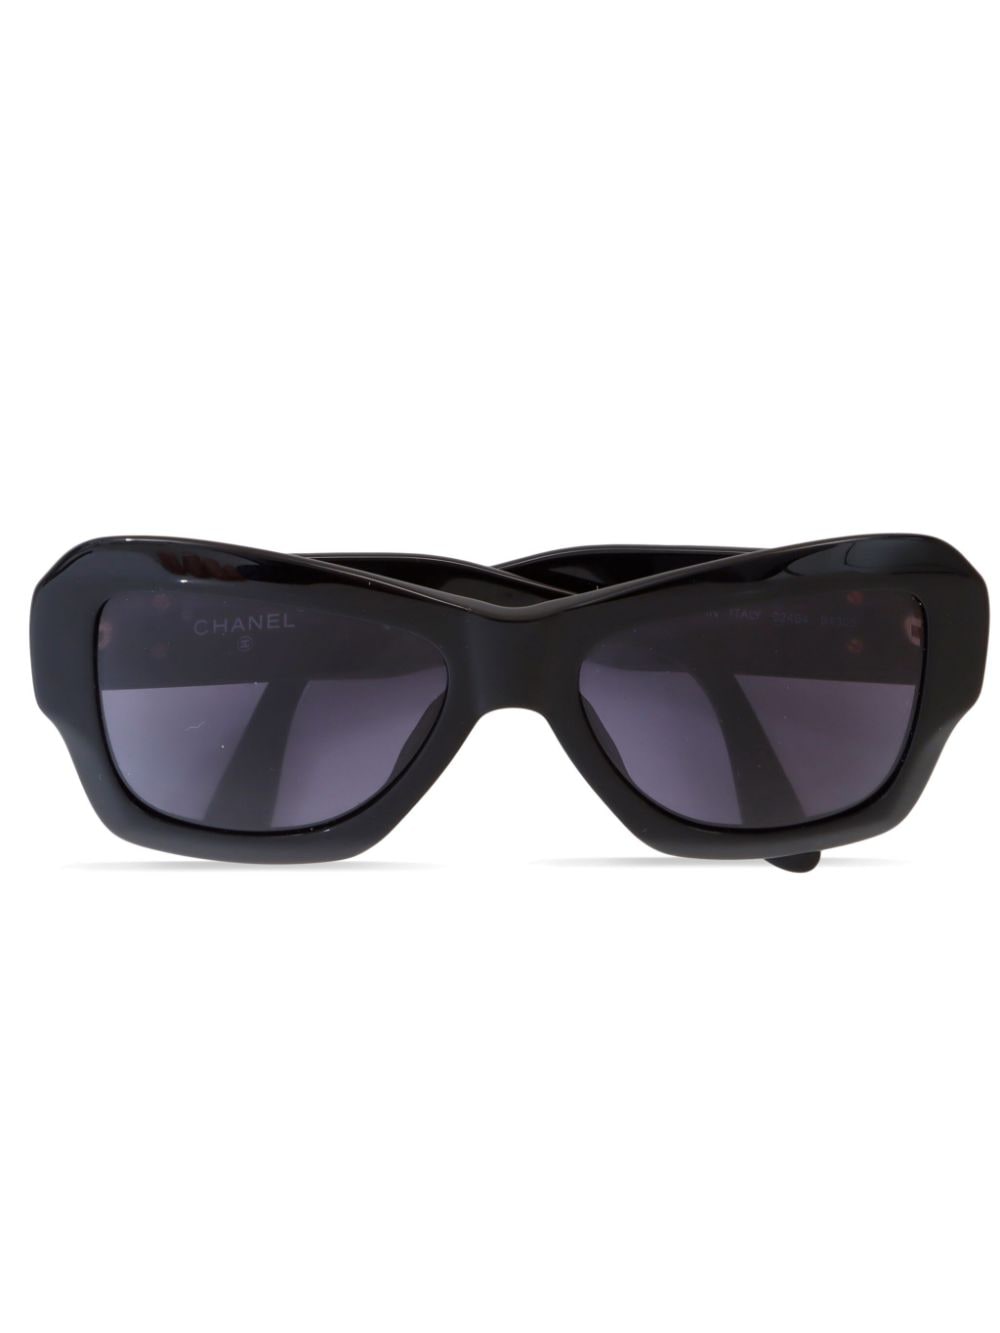 CHANEL Pre-Owned 2000s Sonnenbrille mit Schmetterling-Rahmen - Schwarz von CHANEL Pre-Owned